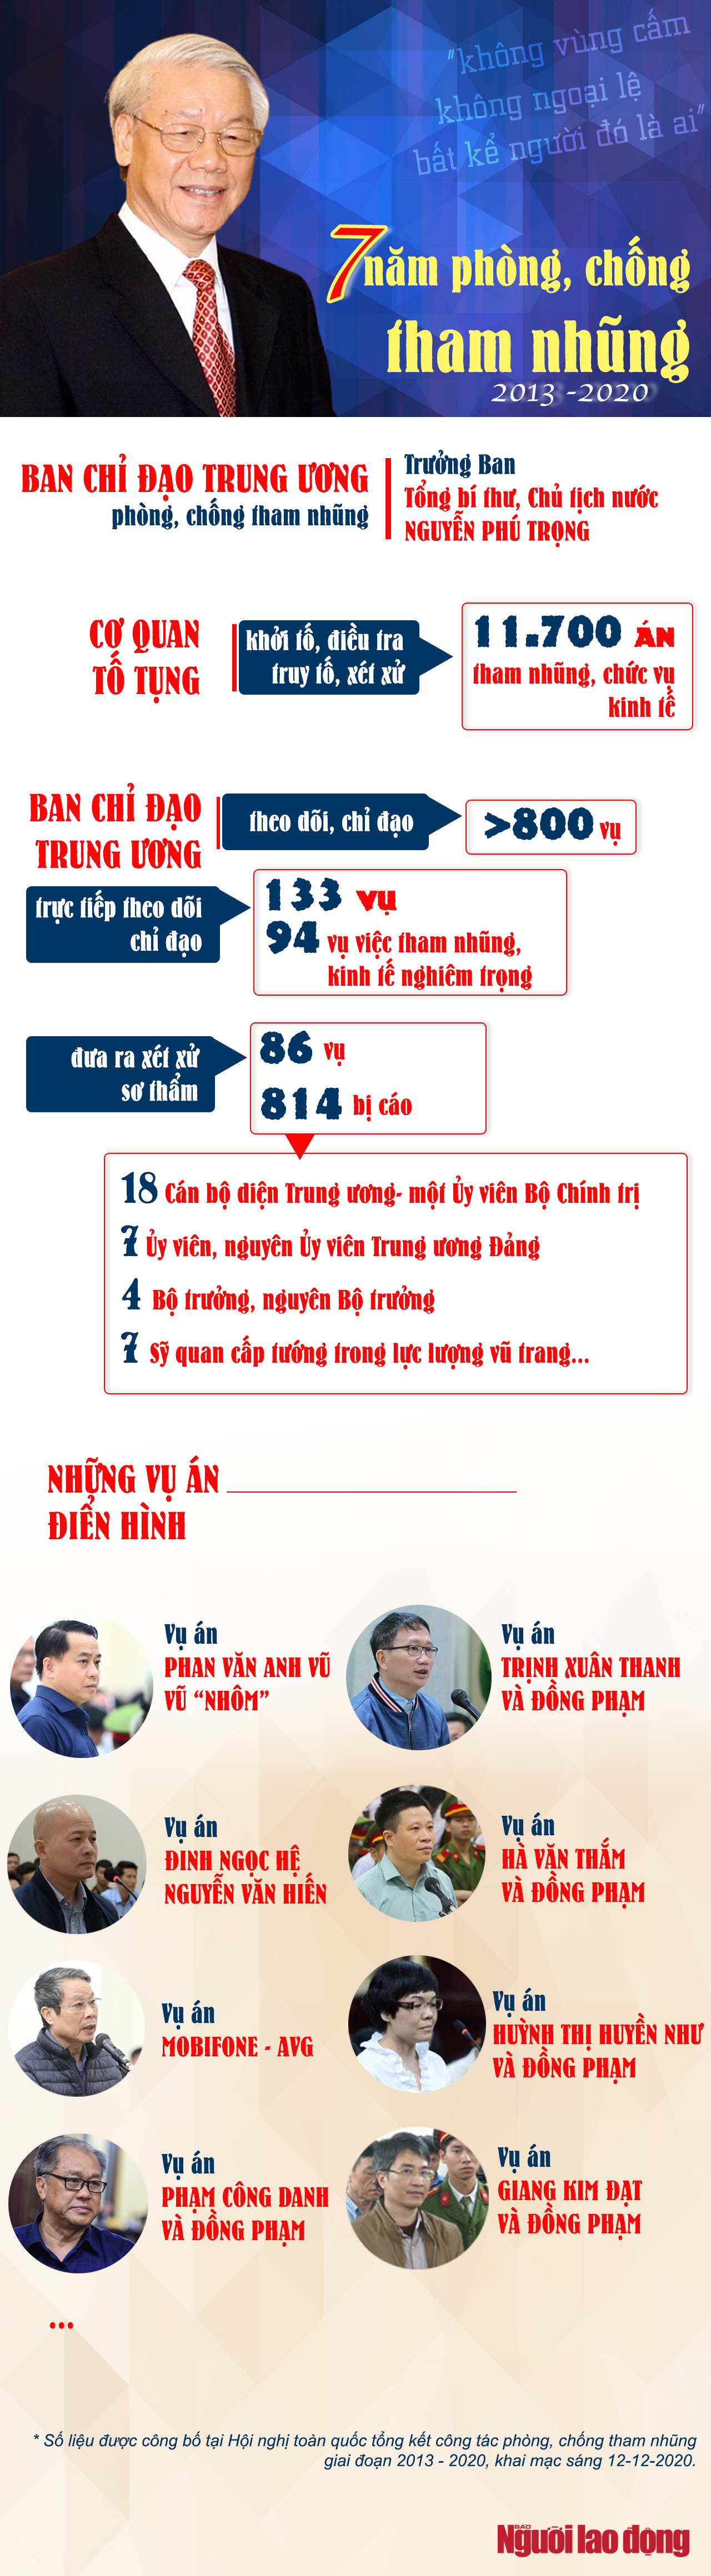 [Infographic] Những con số thể hiện không vùng cấm trong chống tham nhũng - Ảnh 1.